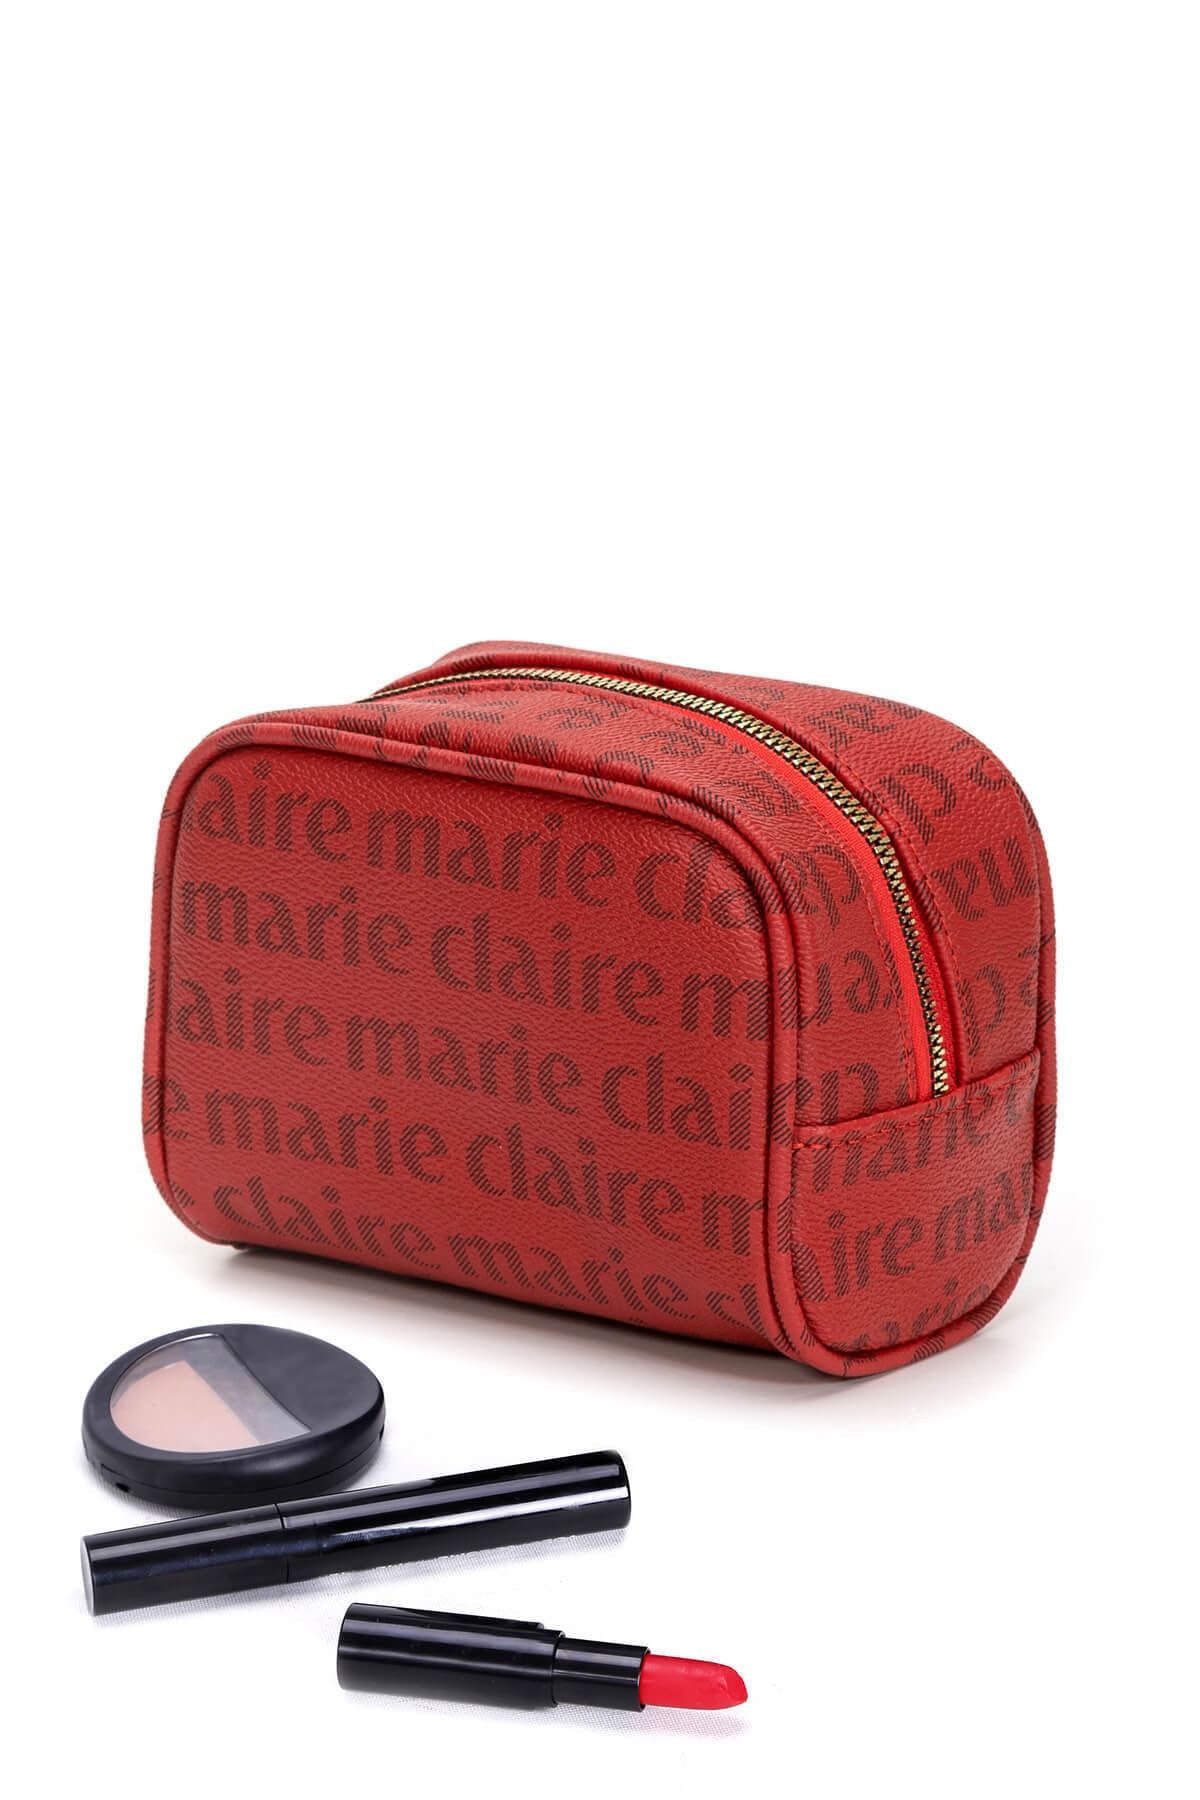 Marie Claire Bordo Kadın Kozmetik Ve Makyaj Çantası Lottie Mc222111282